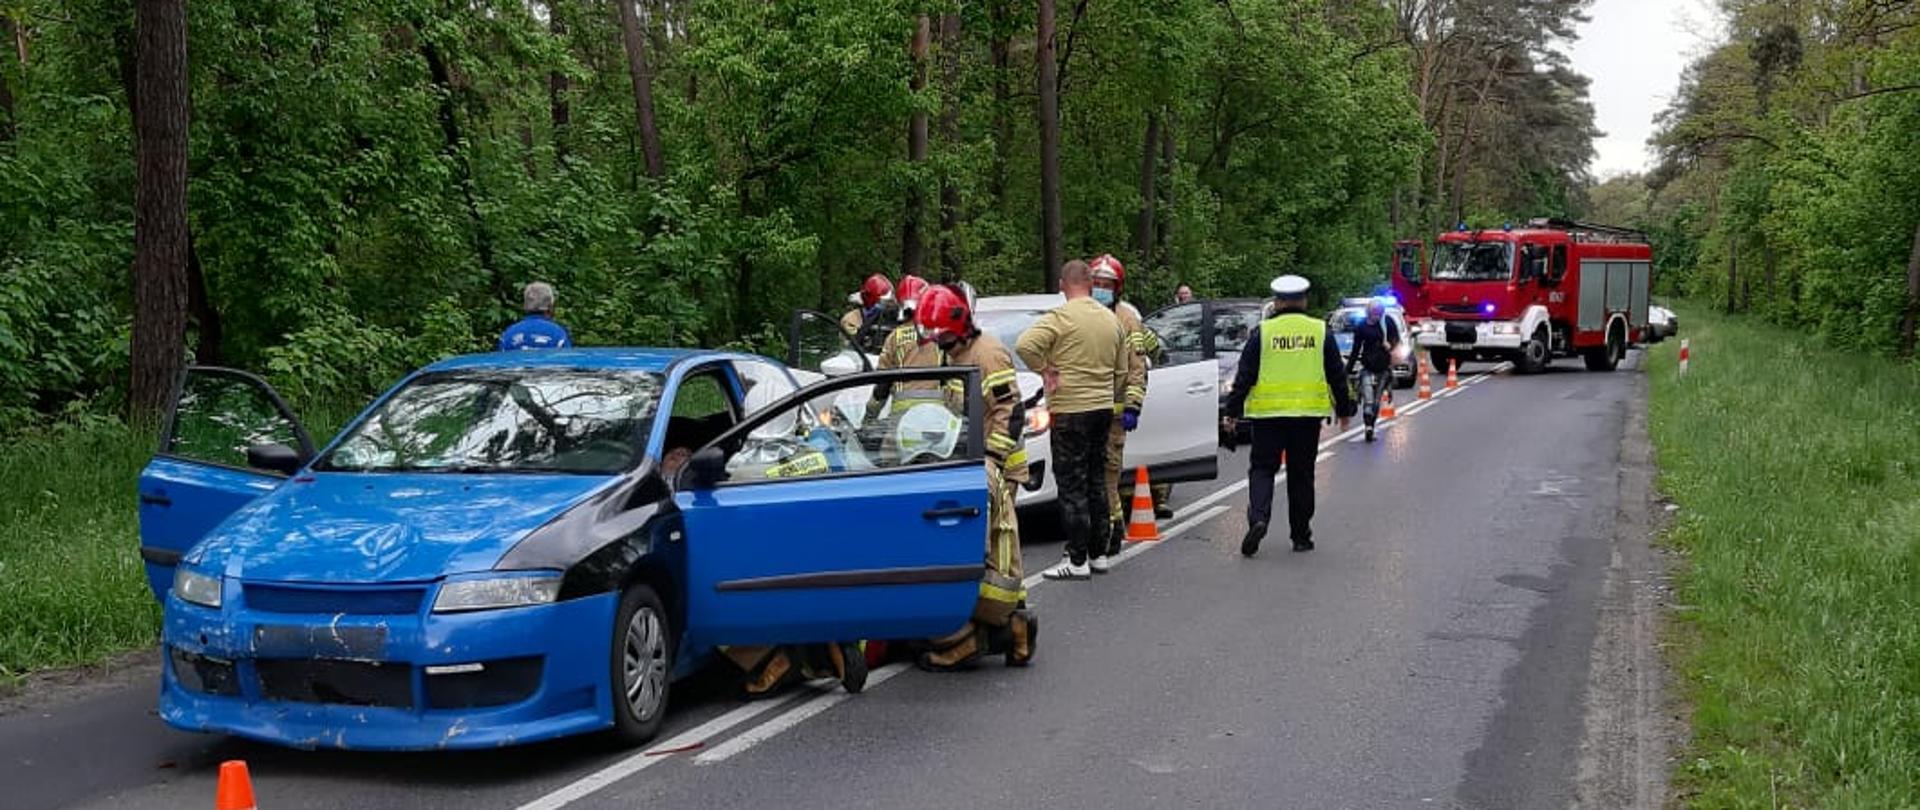 Na zdjęciu rozbite samochody, strażacy policja oraz samochód ratowniczo - gaśniczy